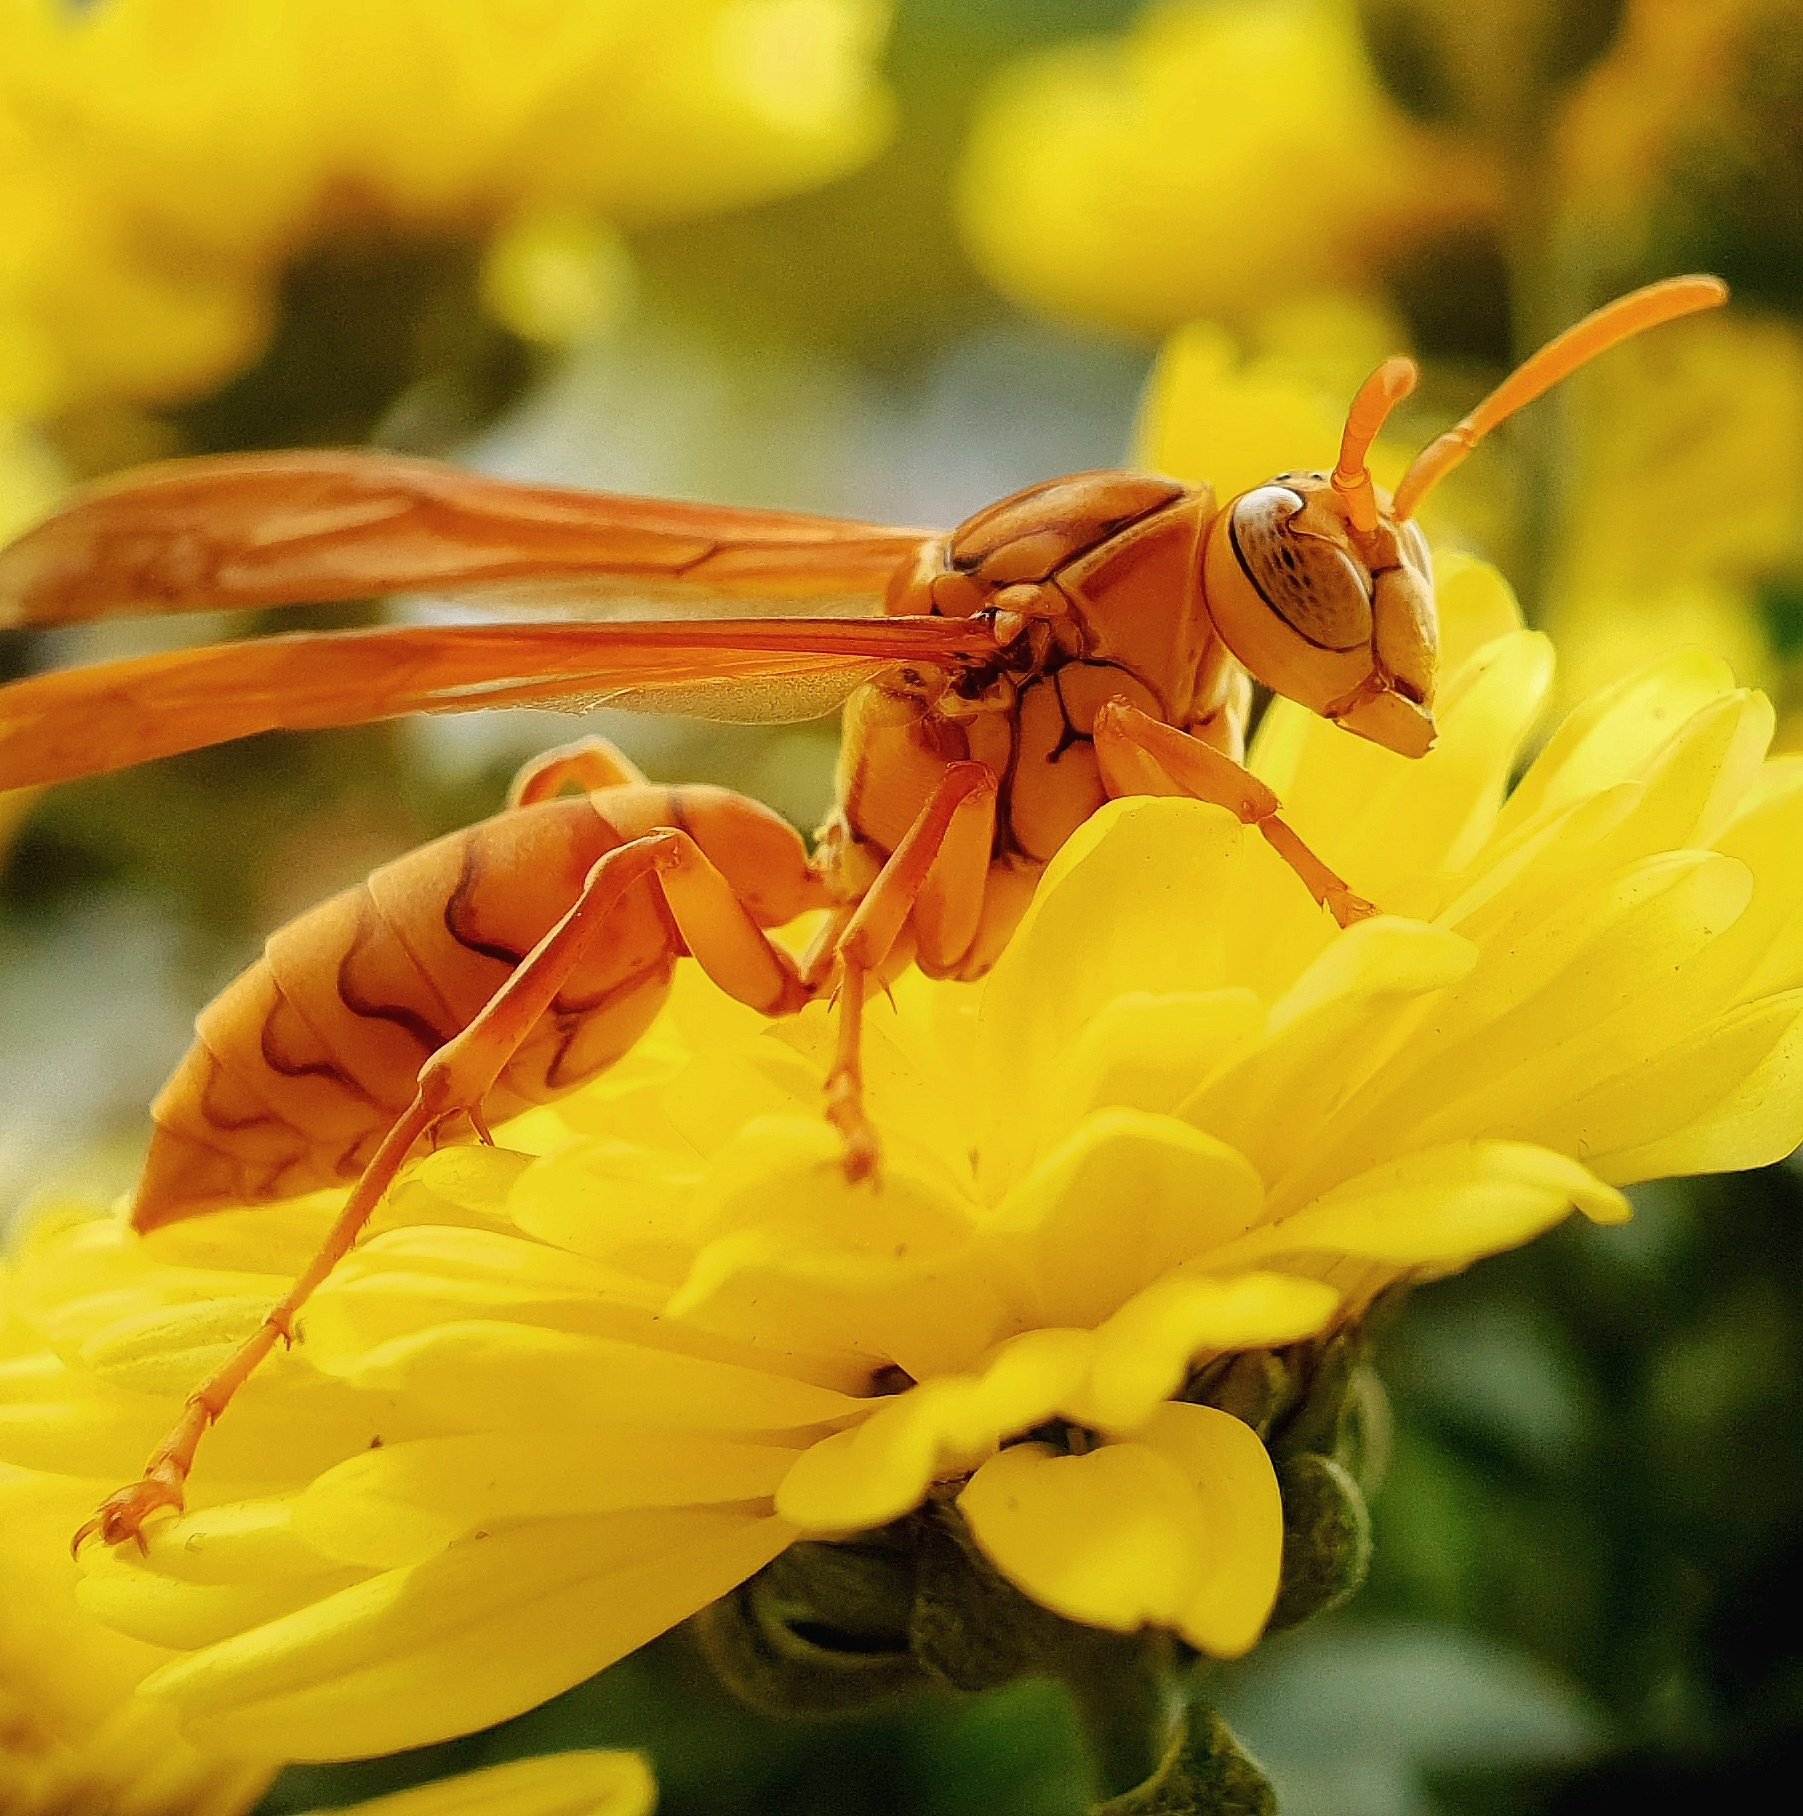 Ảnh ong vàng trên hoa cúc